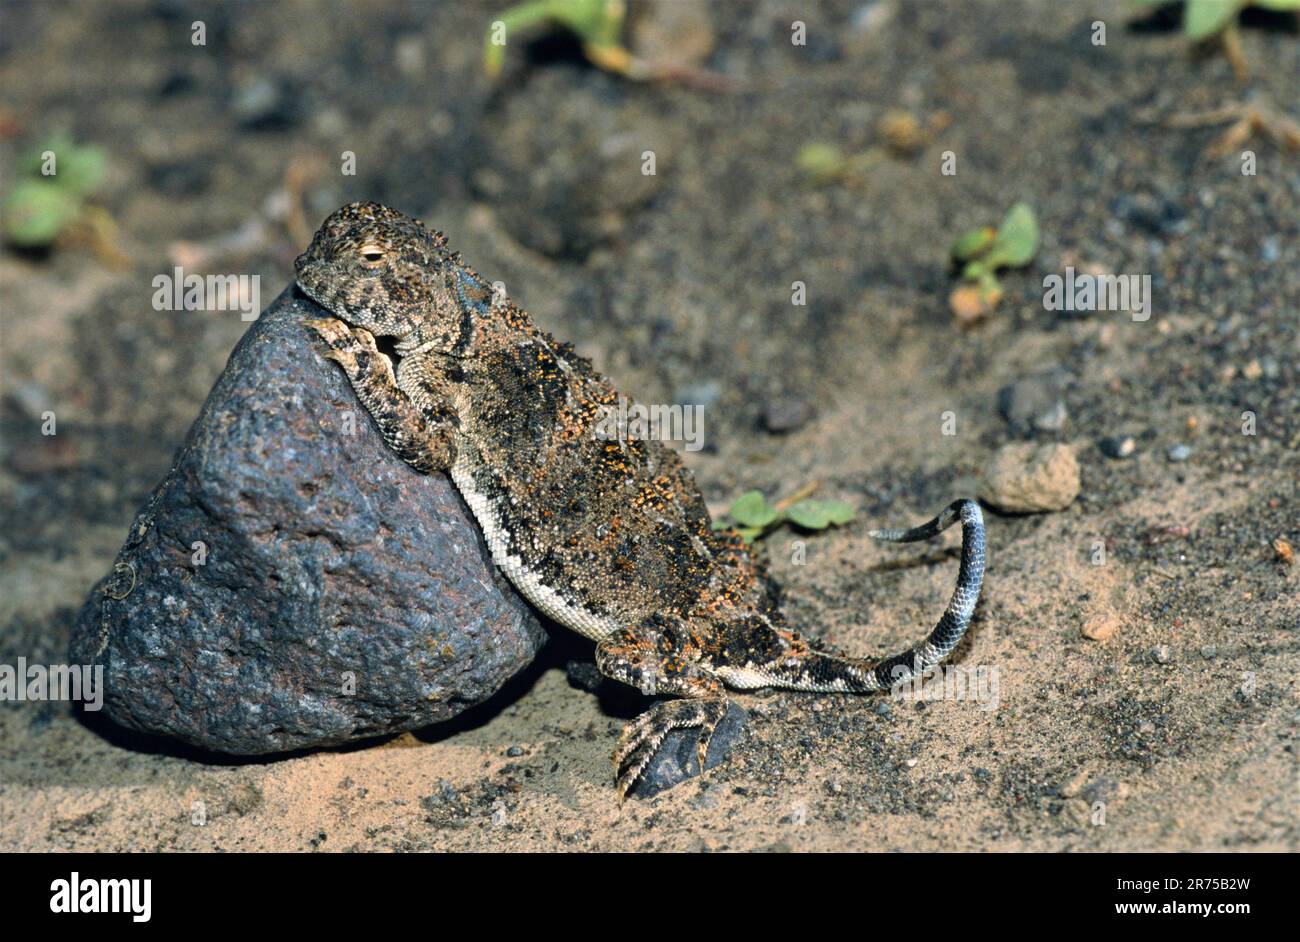 Gray Toadhead Eidechse, Gray Toadhead Agama (Phrynocephalus scutellatus, Agama scutellata), Sonnenbaden, Truthahn, Anatolien, Ostanatolien Stockfoto